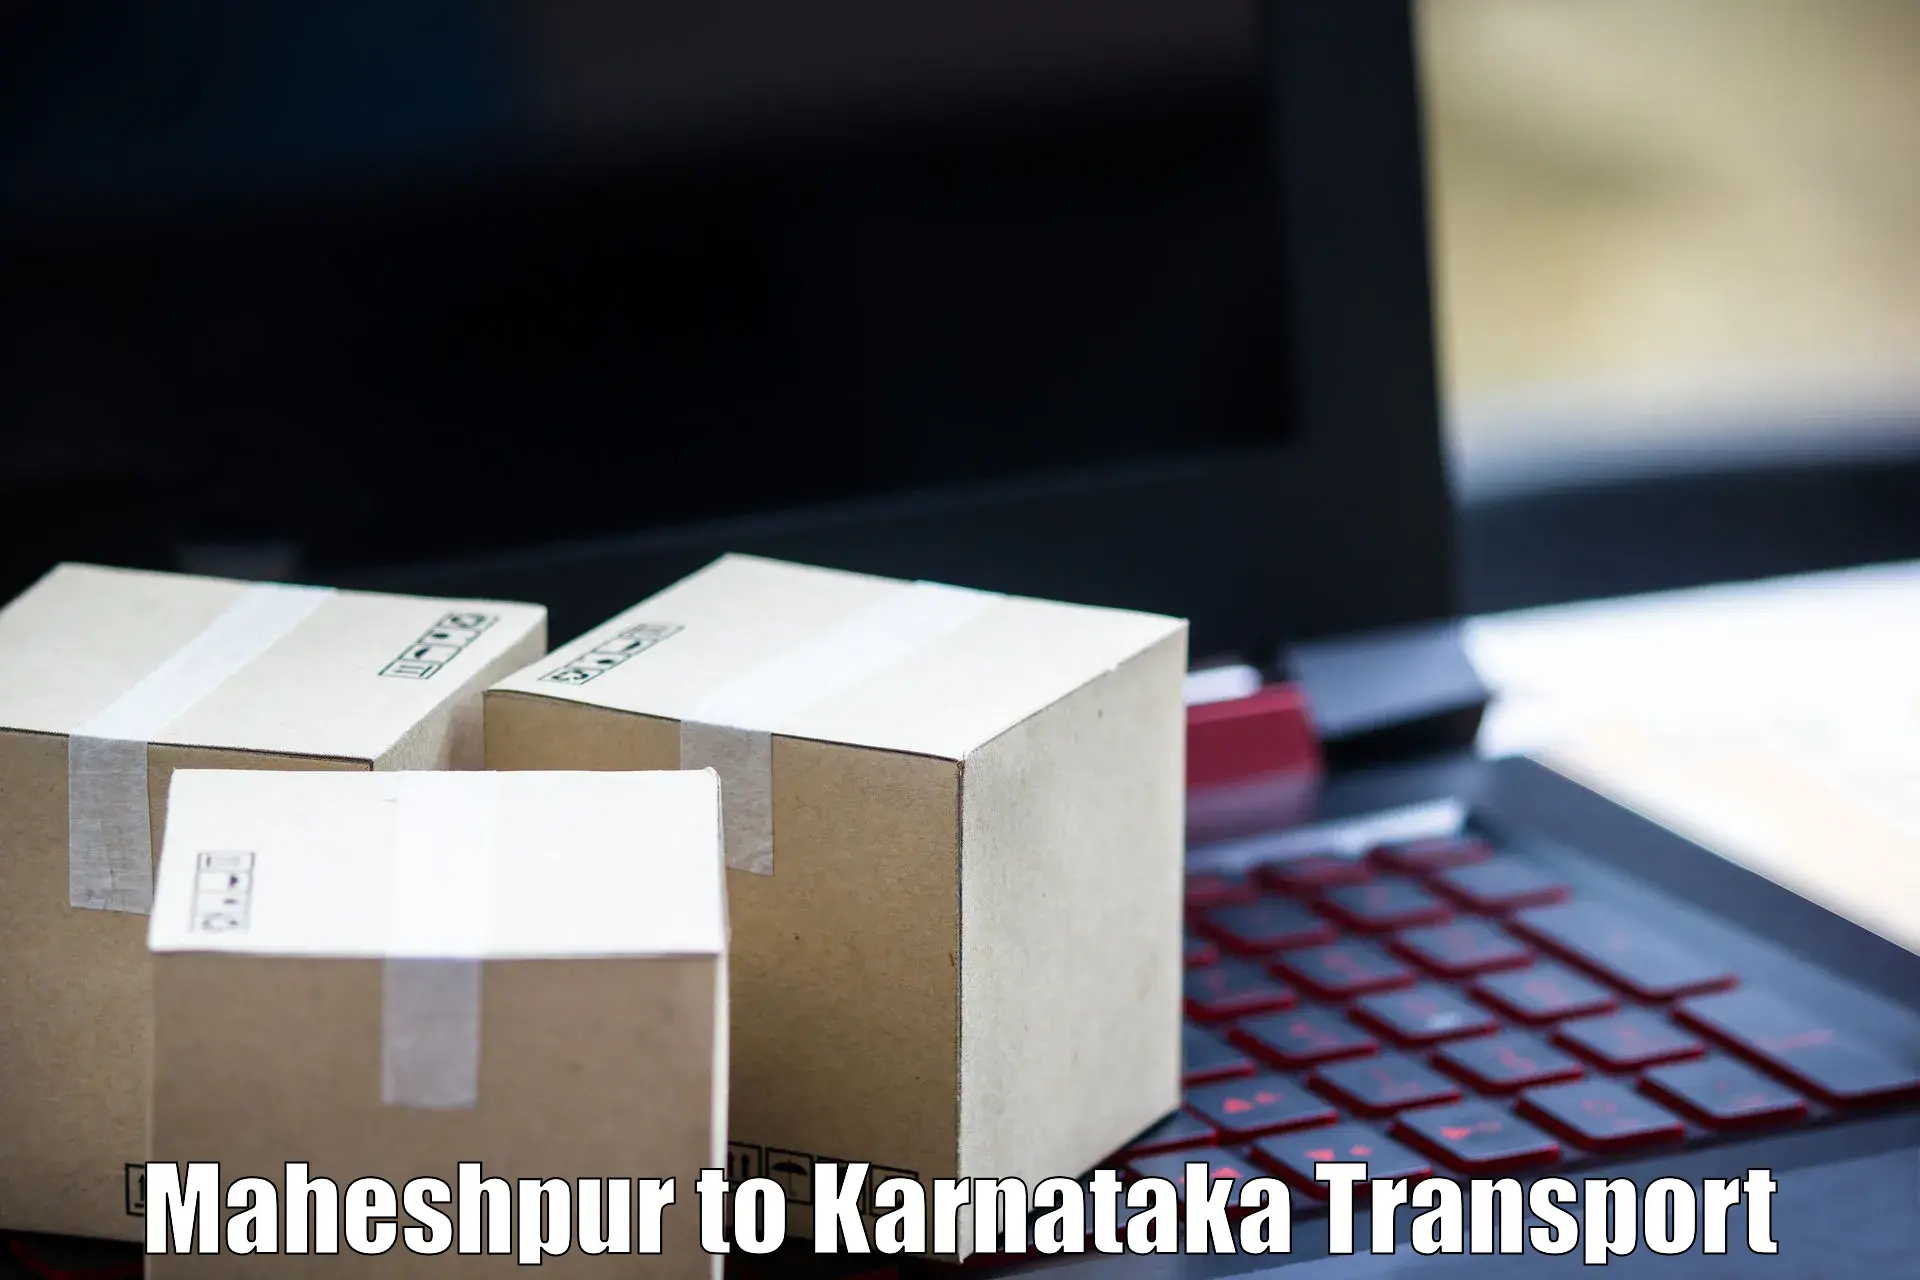 Transportation services Maheshpur to Yenepoya Mangalore